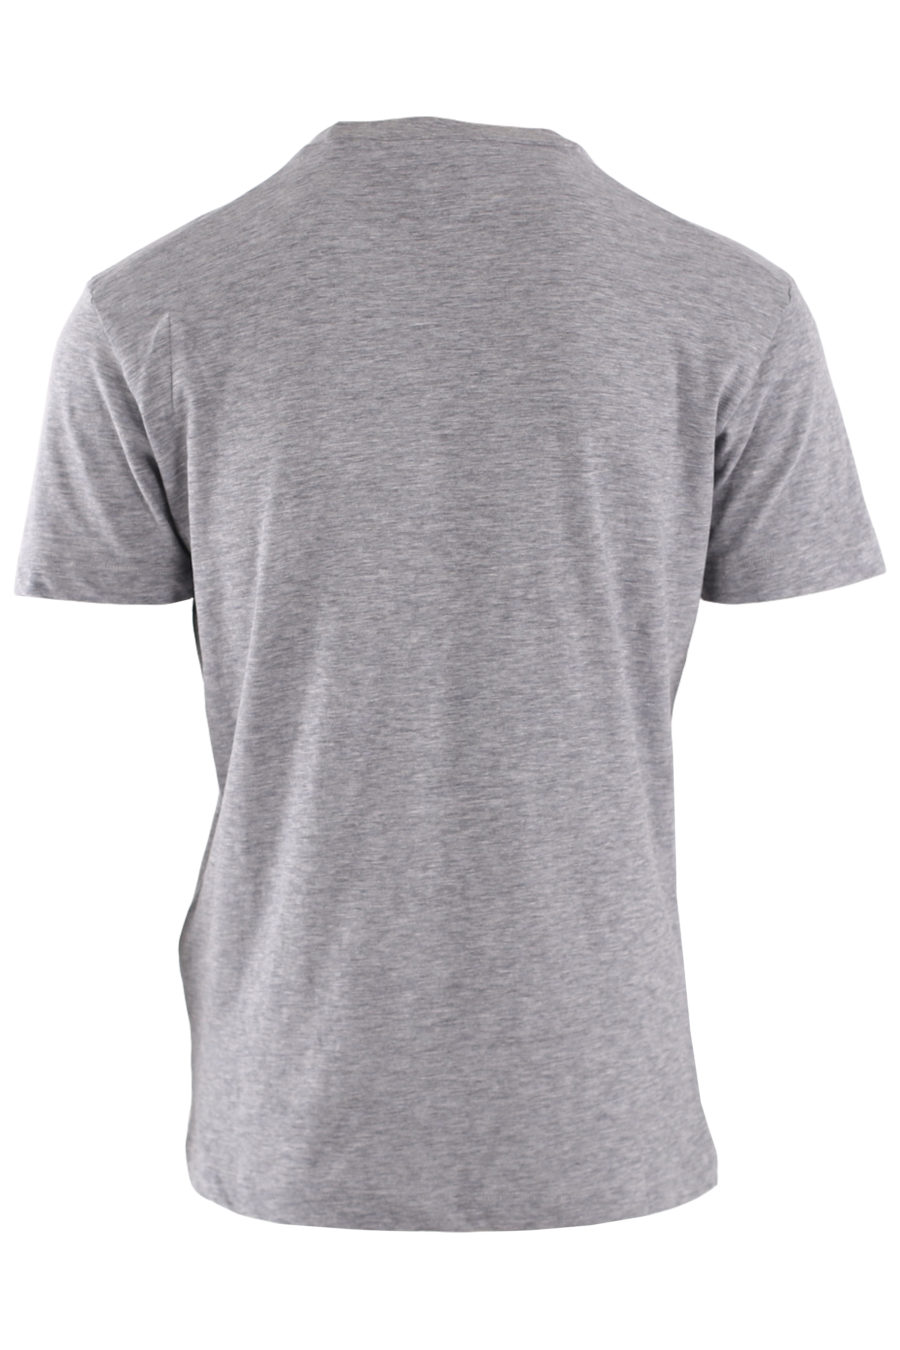 Camiseta gris con logo "Icon Spray" - IMG 8821